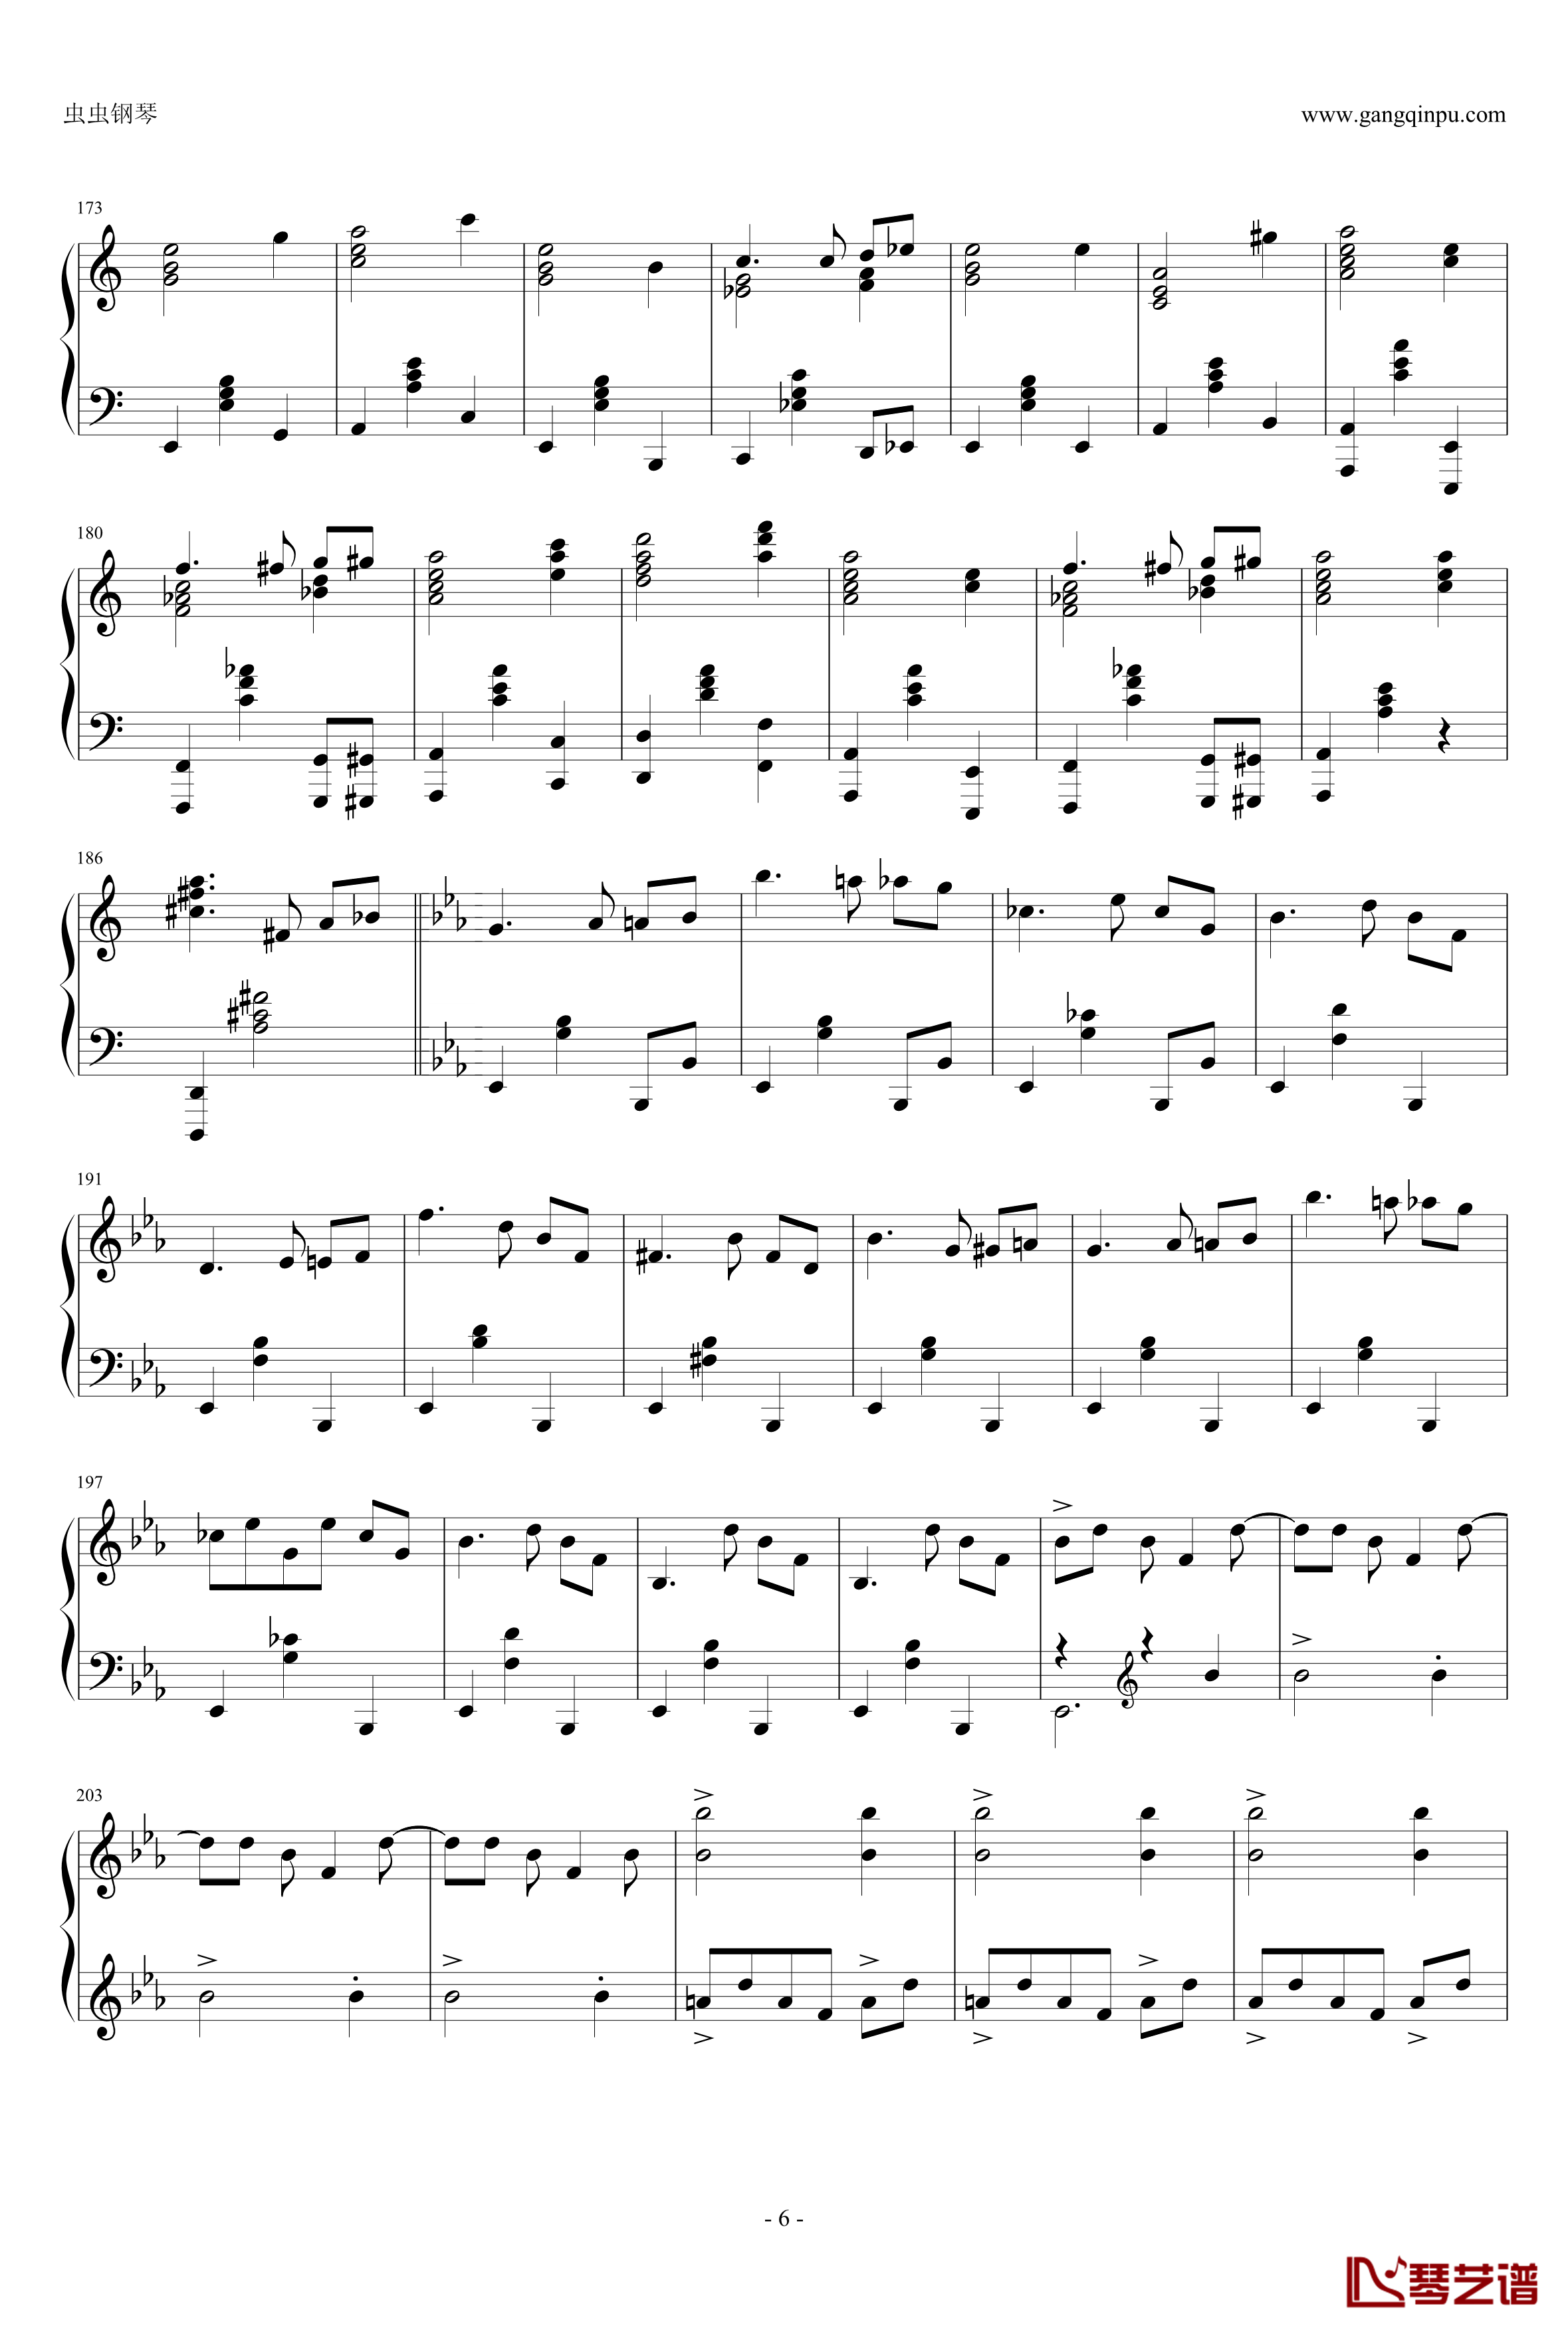 圆舞曲钢琴谱-灰姑娘-普罗科非耶夫6